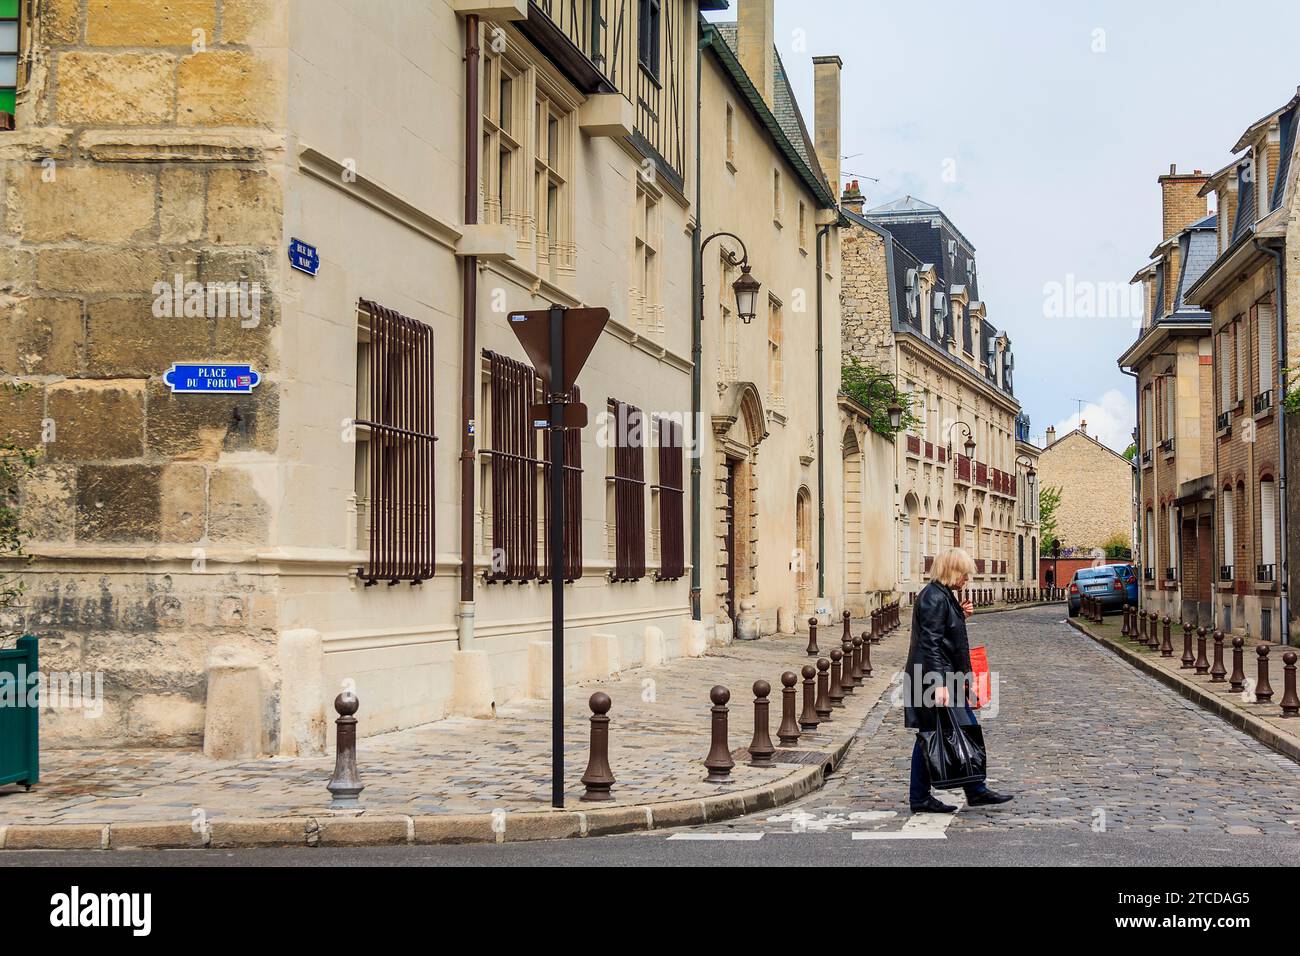 C'est une femme inconnue traversant la route dans le centre historique le 15 mai 2015 à Reims, France. Banque D'Images